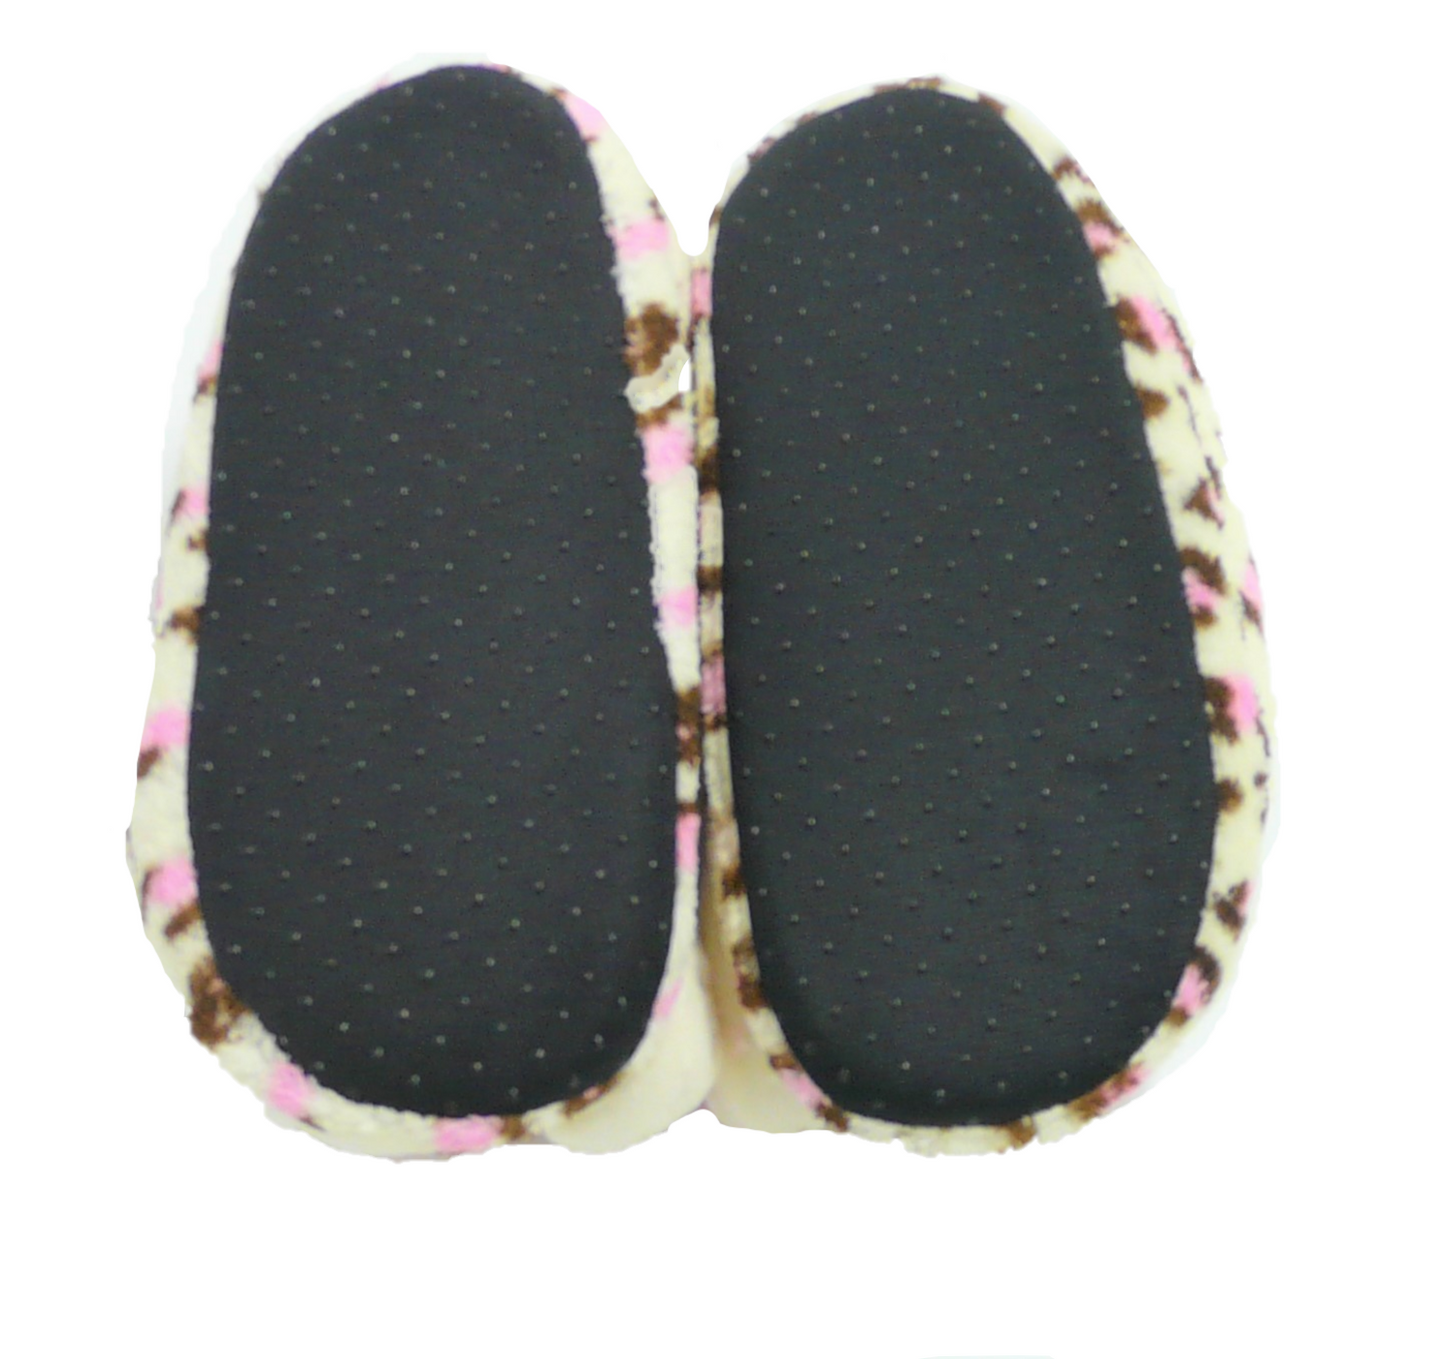 Girl's Monster Feet Slippers Novelty Size 11-12 Gift